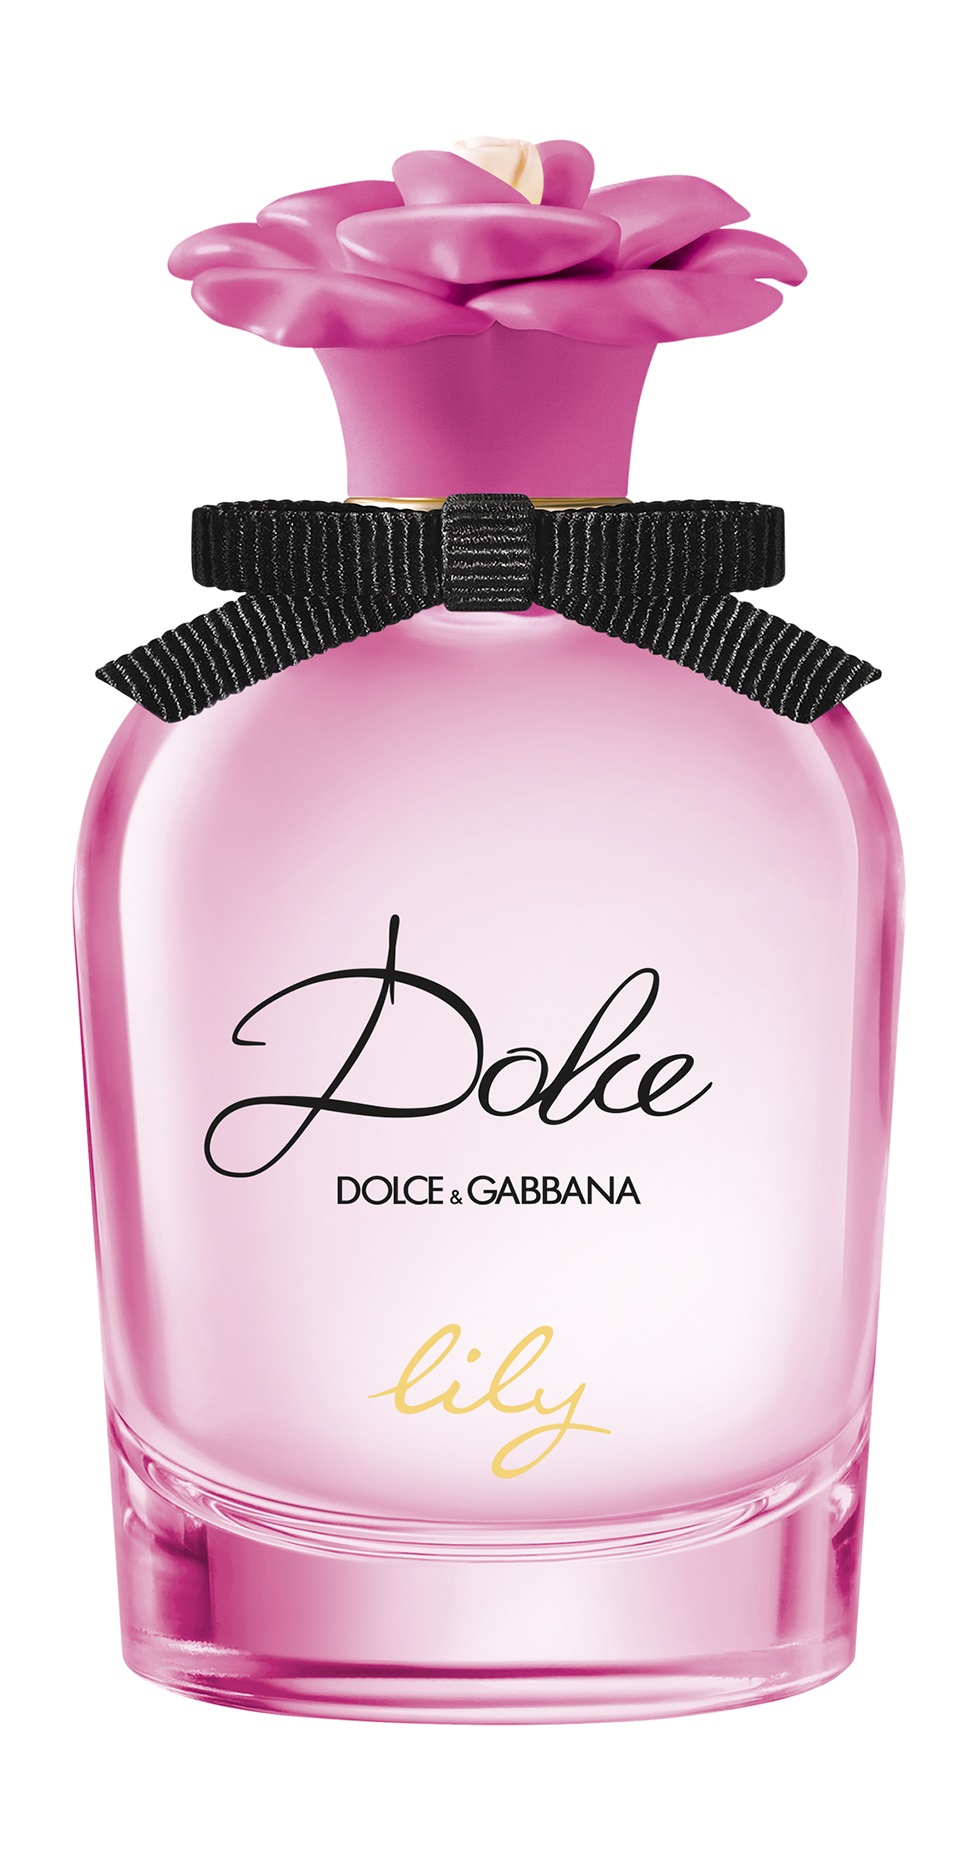 Dolce Gabbana Dolce Garden 50 мл. Парфюмерная вода Dolce & Gabbana Dolce Peony. Духи Дольче Габбана Дольче Шайн. Dolce&Gabbana Dolce Garden 75.